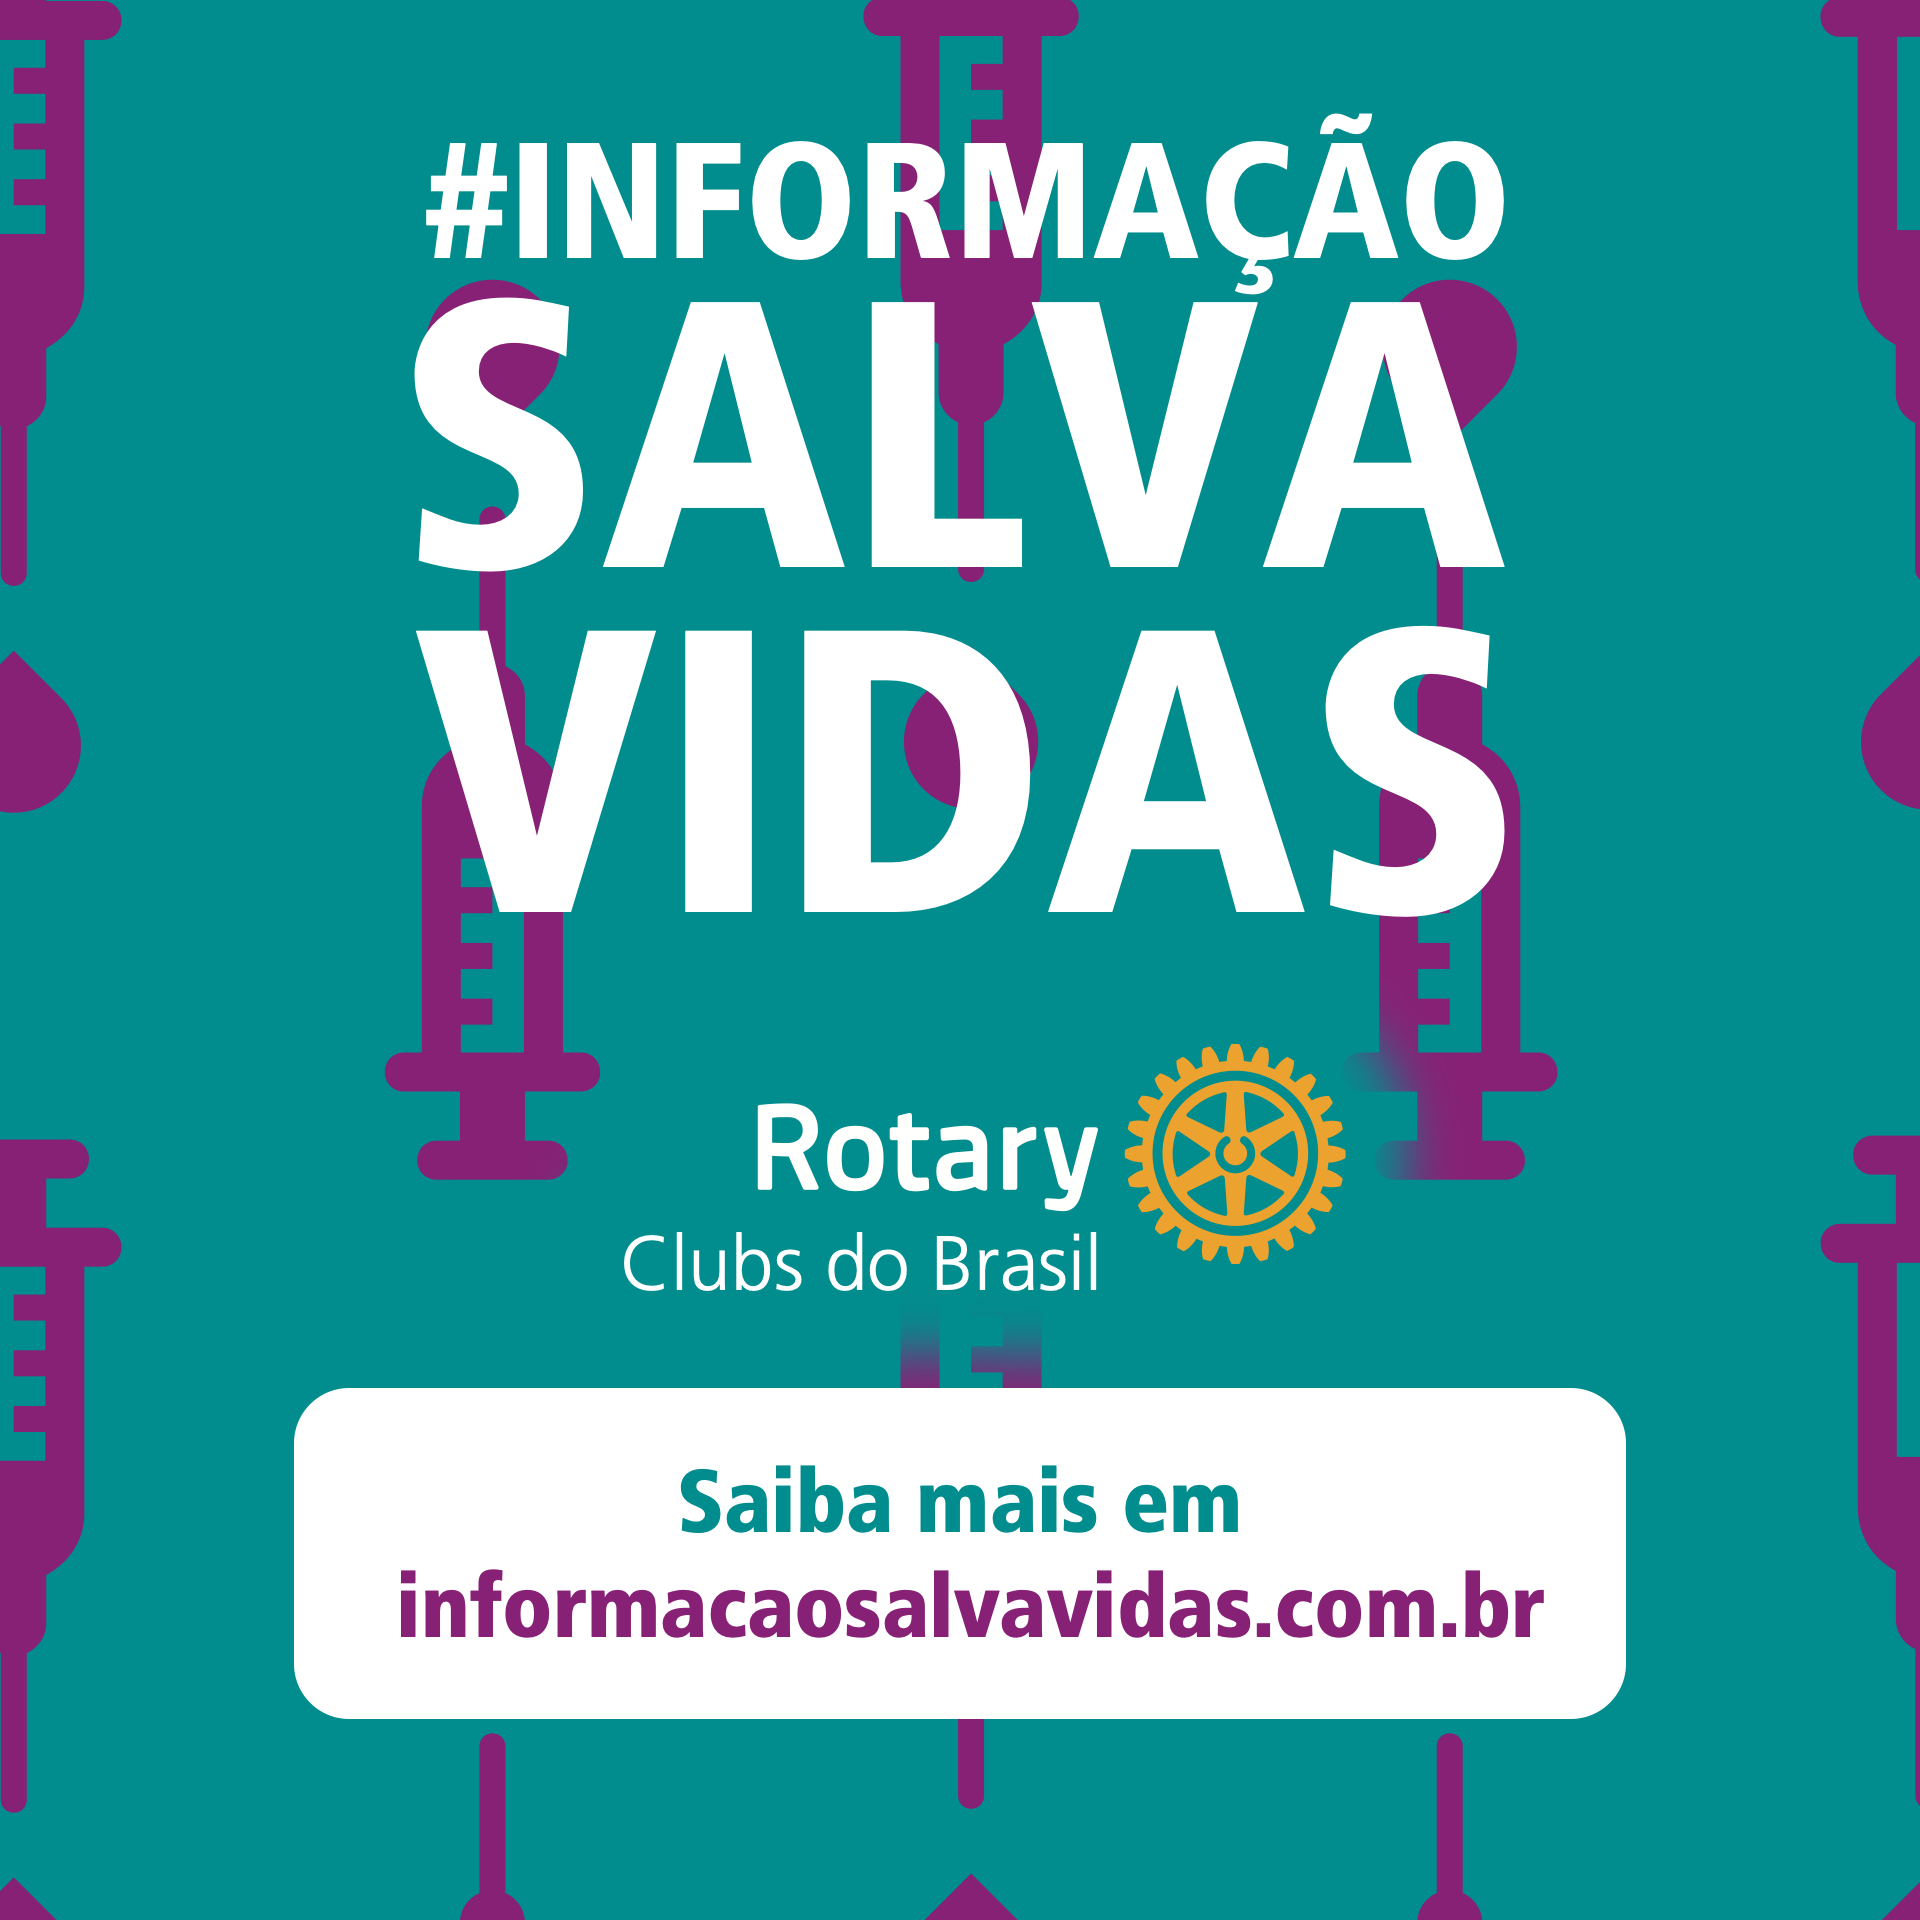 Rotary Clubs de do Brasil promovem a campanha “Informação Salva Vidas”